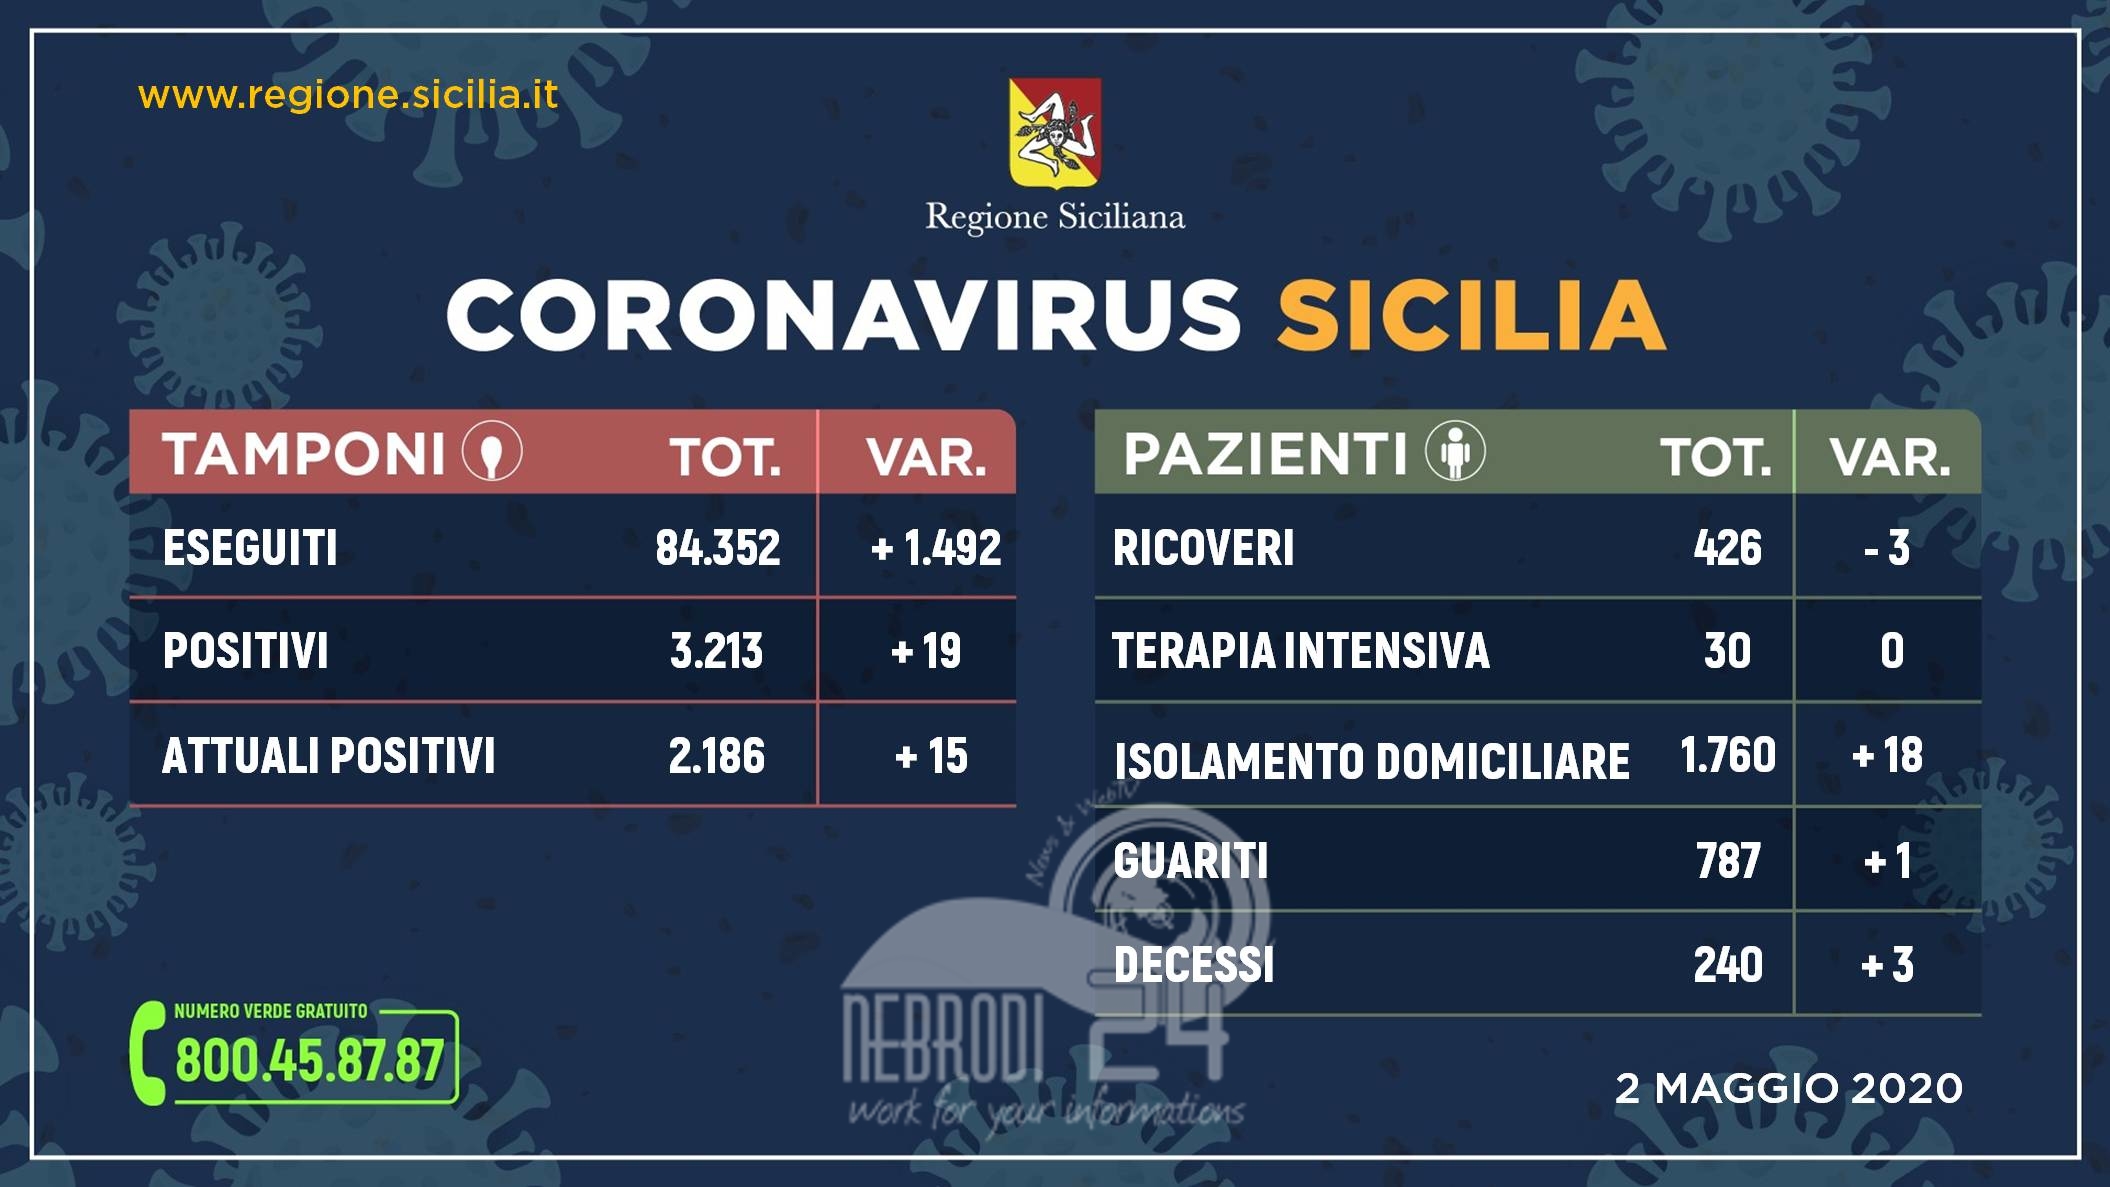 Coronavirus: in Sicilia situazione stabile, 2.186 positivi. La curva risale un minimo sopra l’1 %. 19 positivi